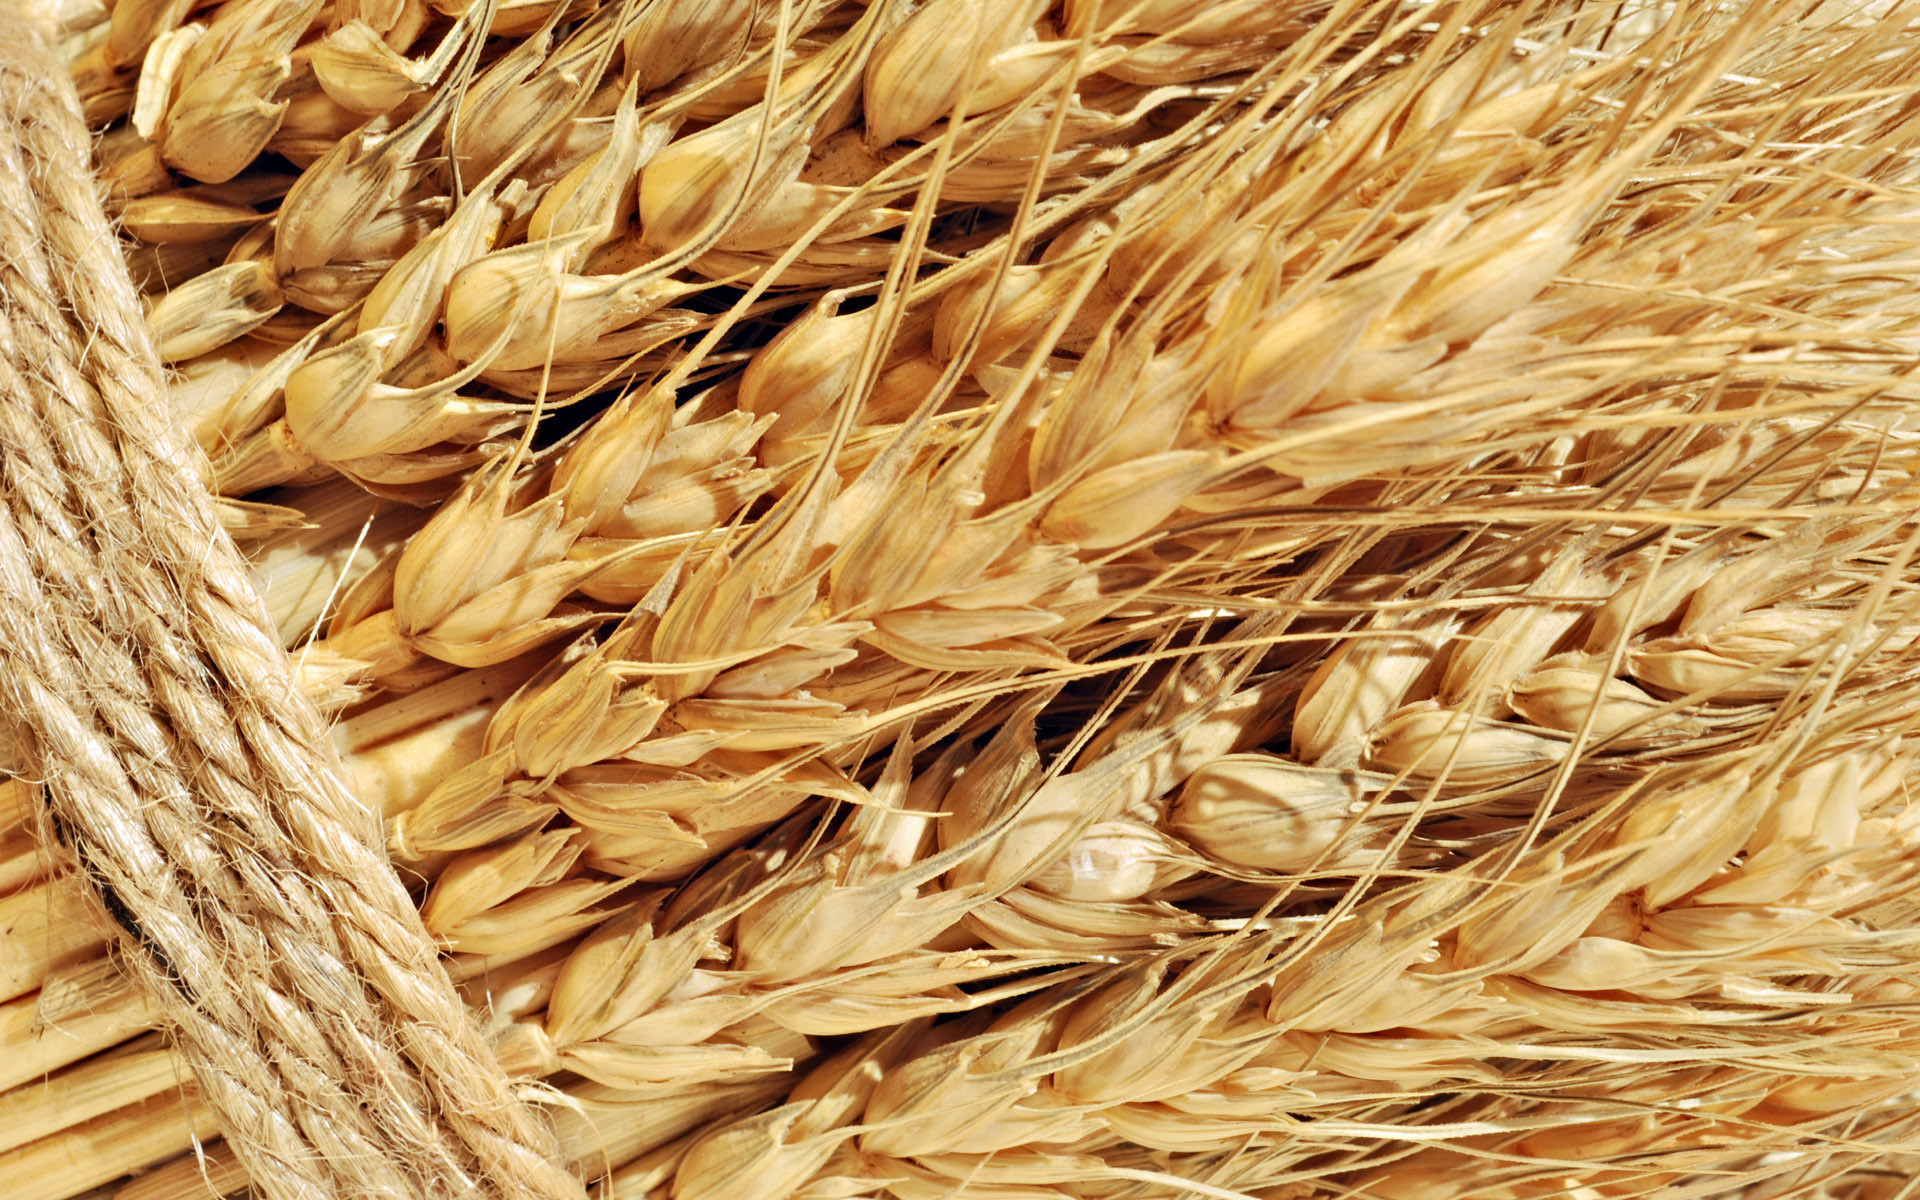 Цены на пшеницу под давлением предложений дешевого причерноморского зерна